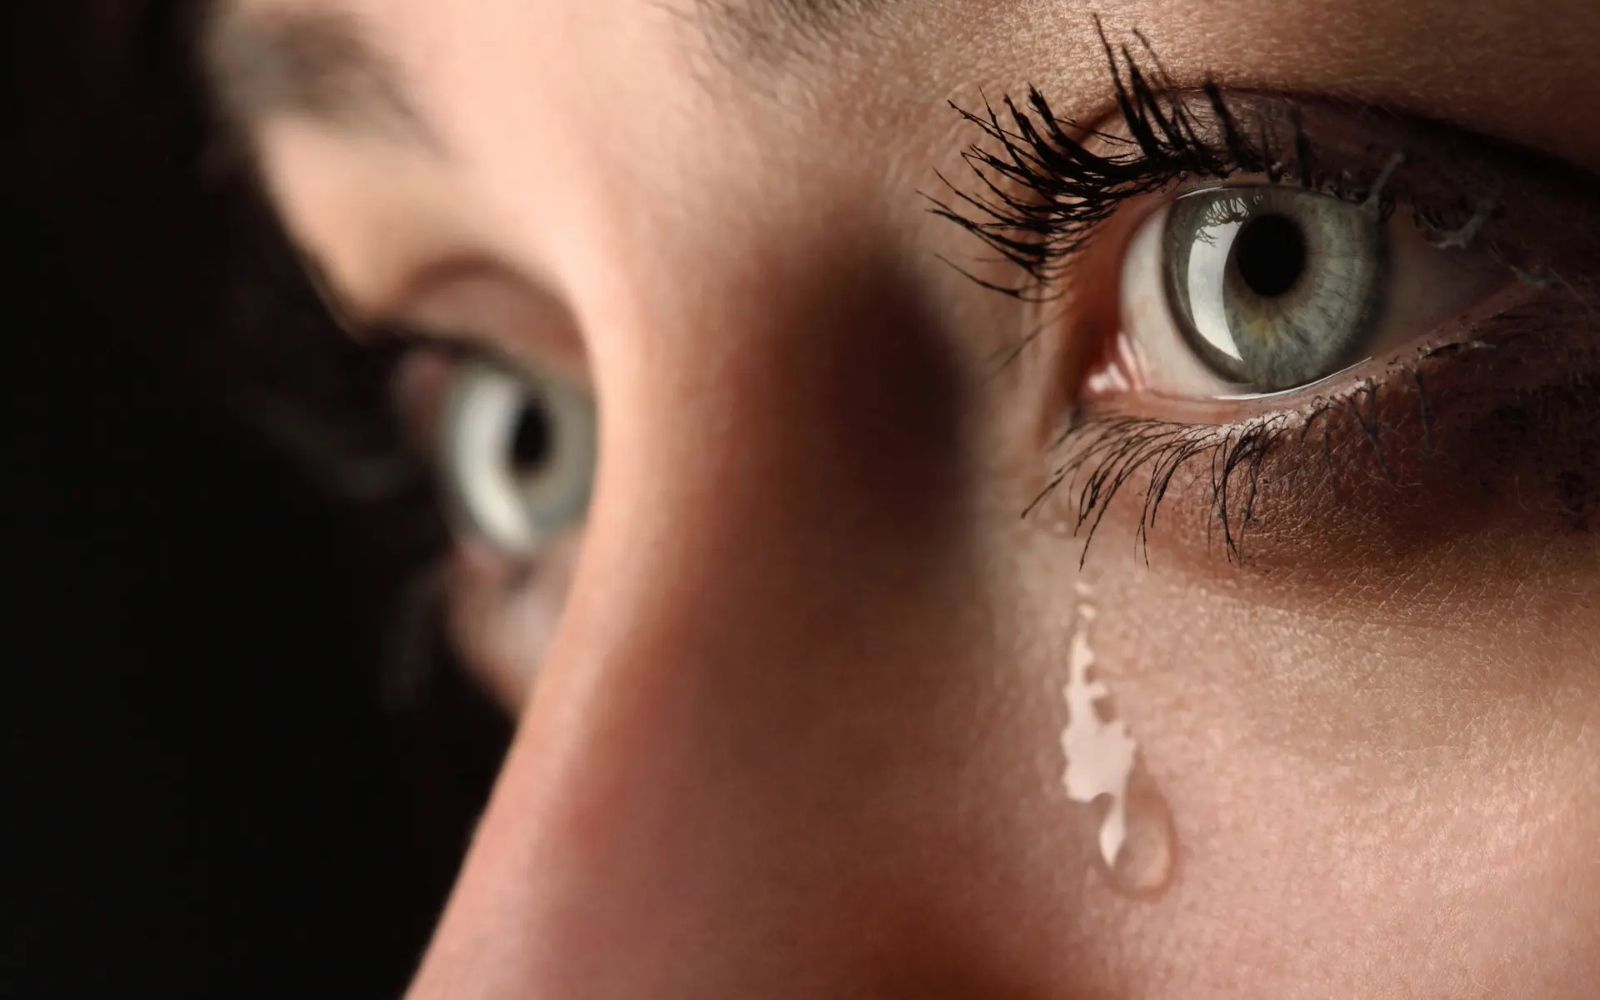 Исследование показало, что нюхание женских слез снижает мужскую агрессию.